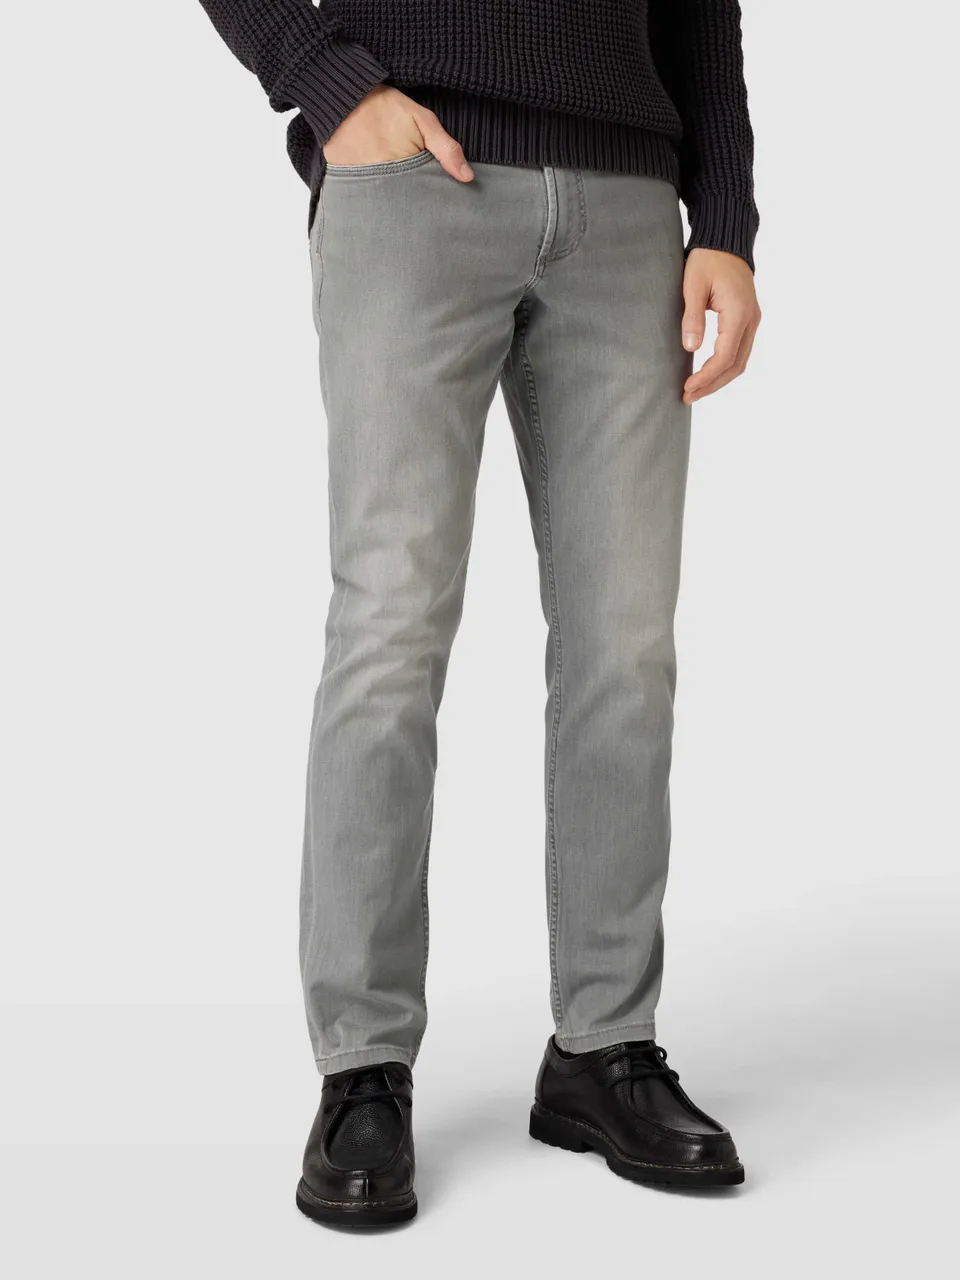 Regular Fit Jeans im 5-Pocket-Design